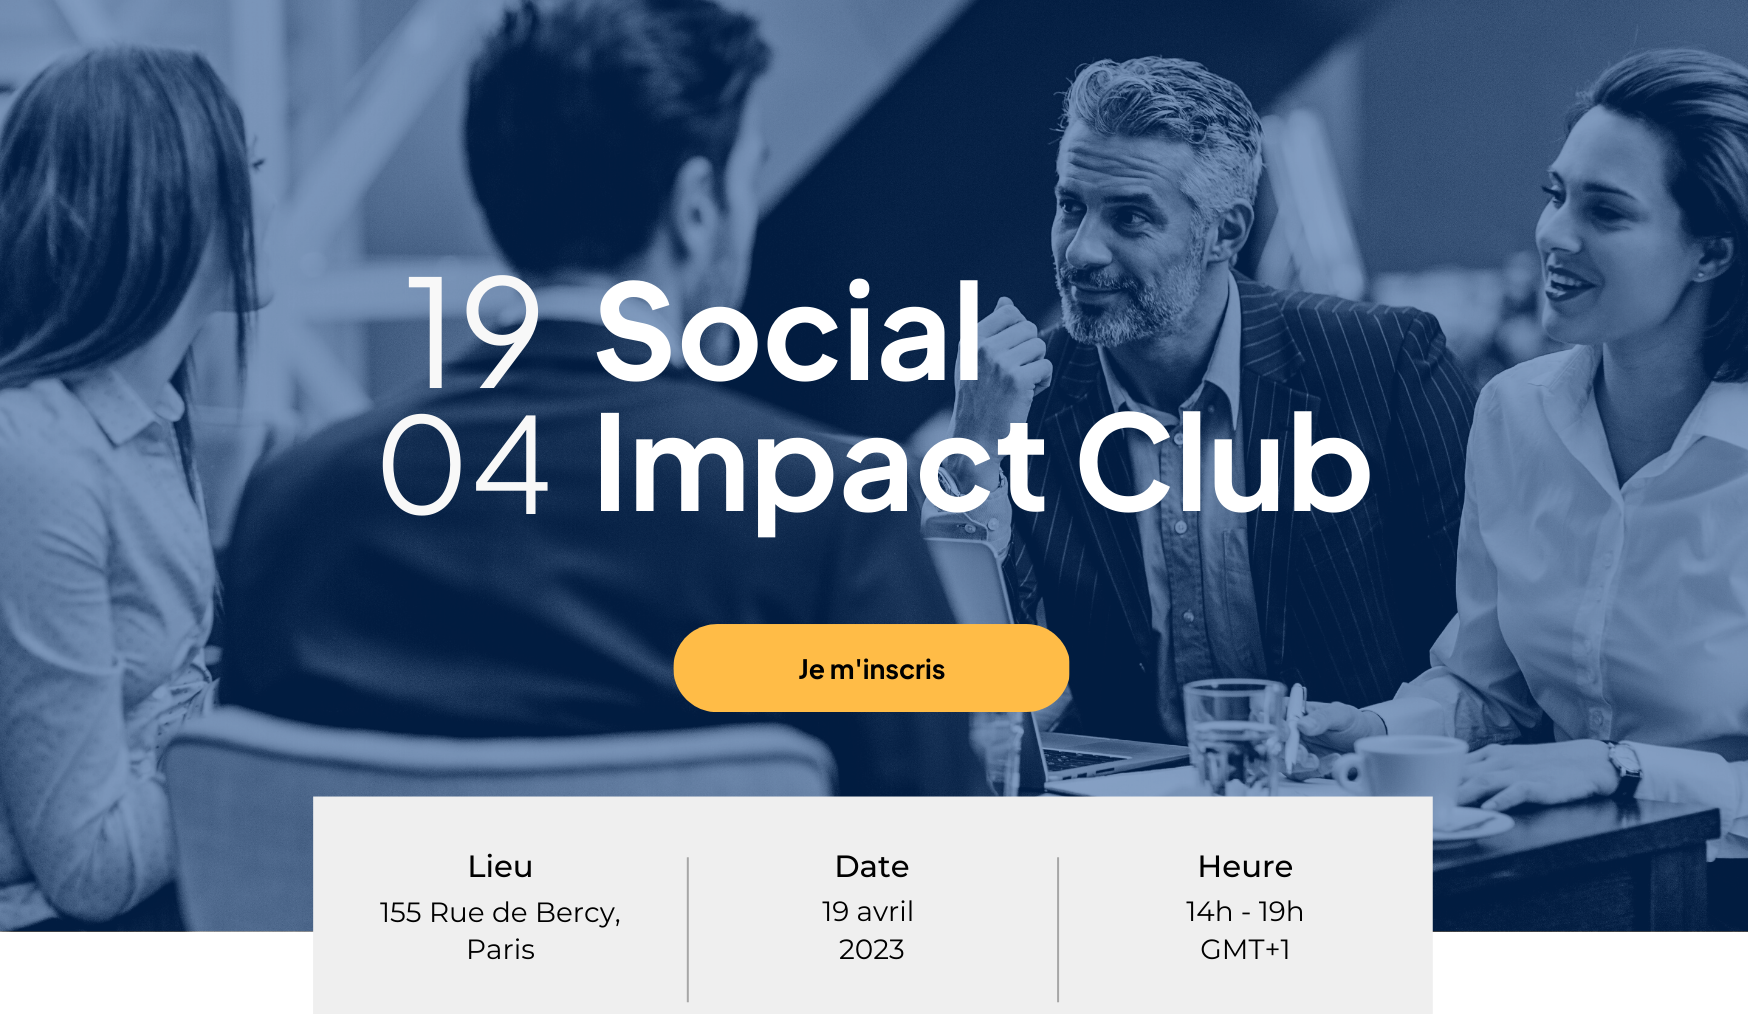 Le Social Impact Club by Optimy - Crédit photo : Optimy